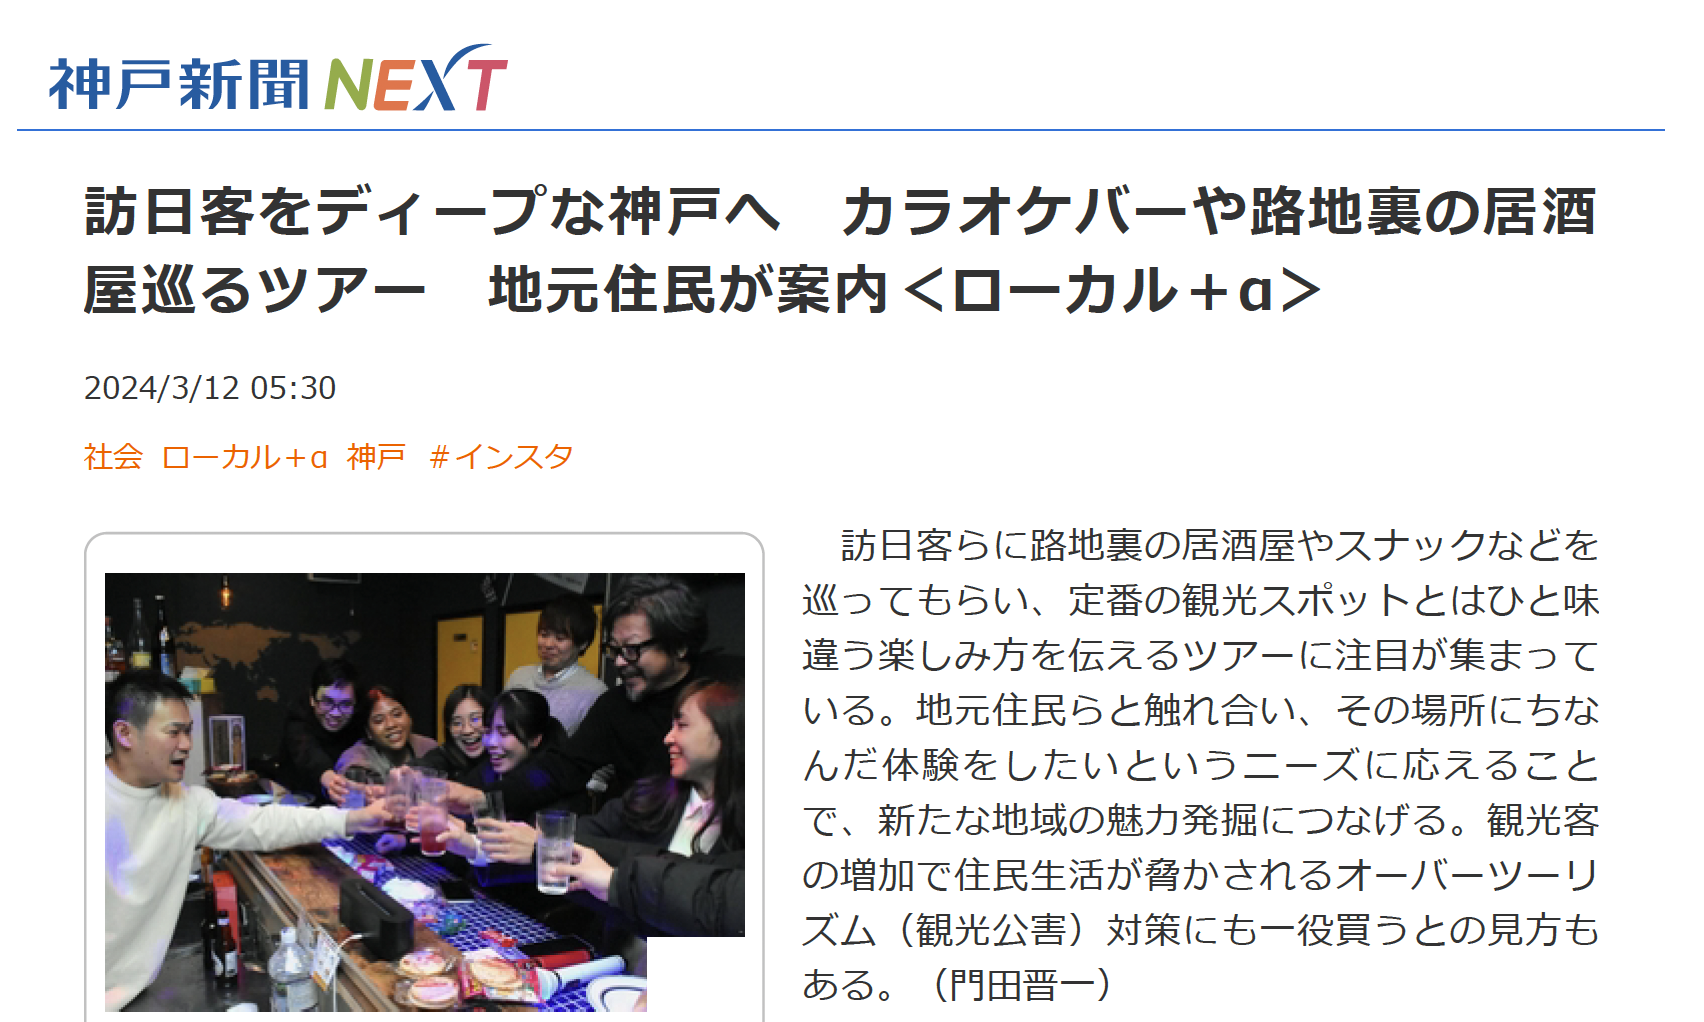 神戸新聞のローカルツアー紹介記事に弊社の取り組みが紹介されました